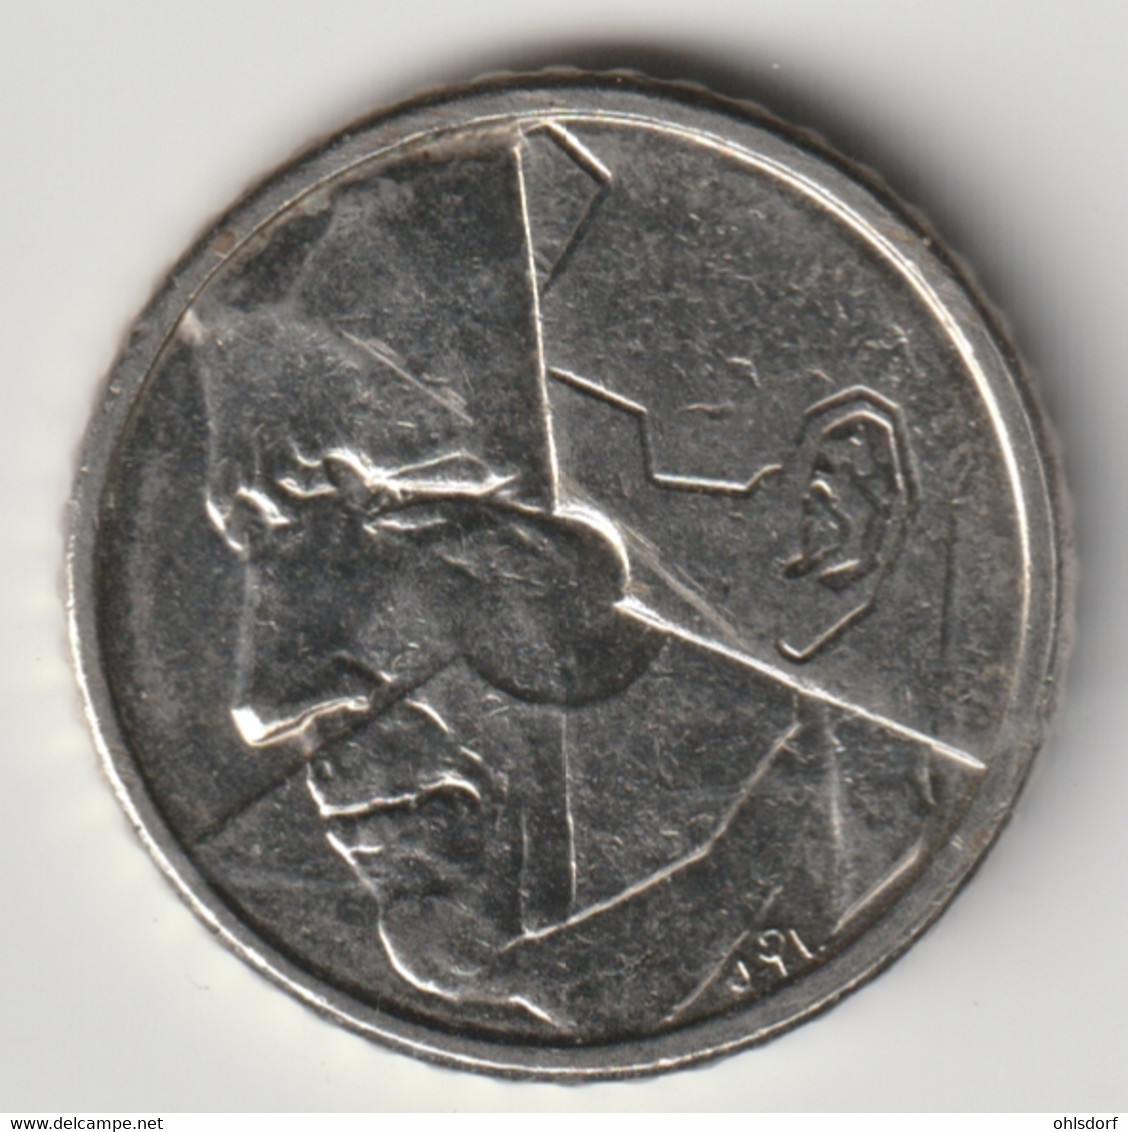 BELGIE 1990: 50 Fr., KM 169 - 50 Francs